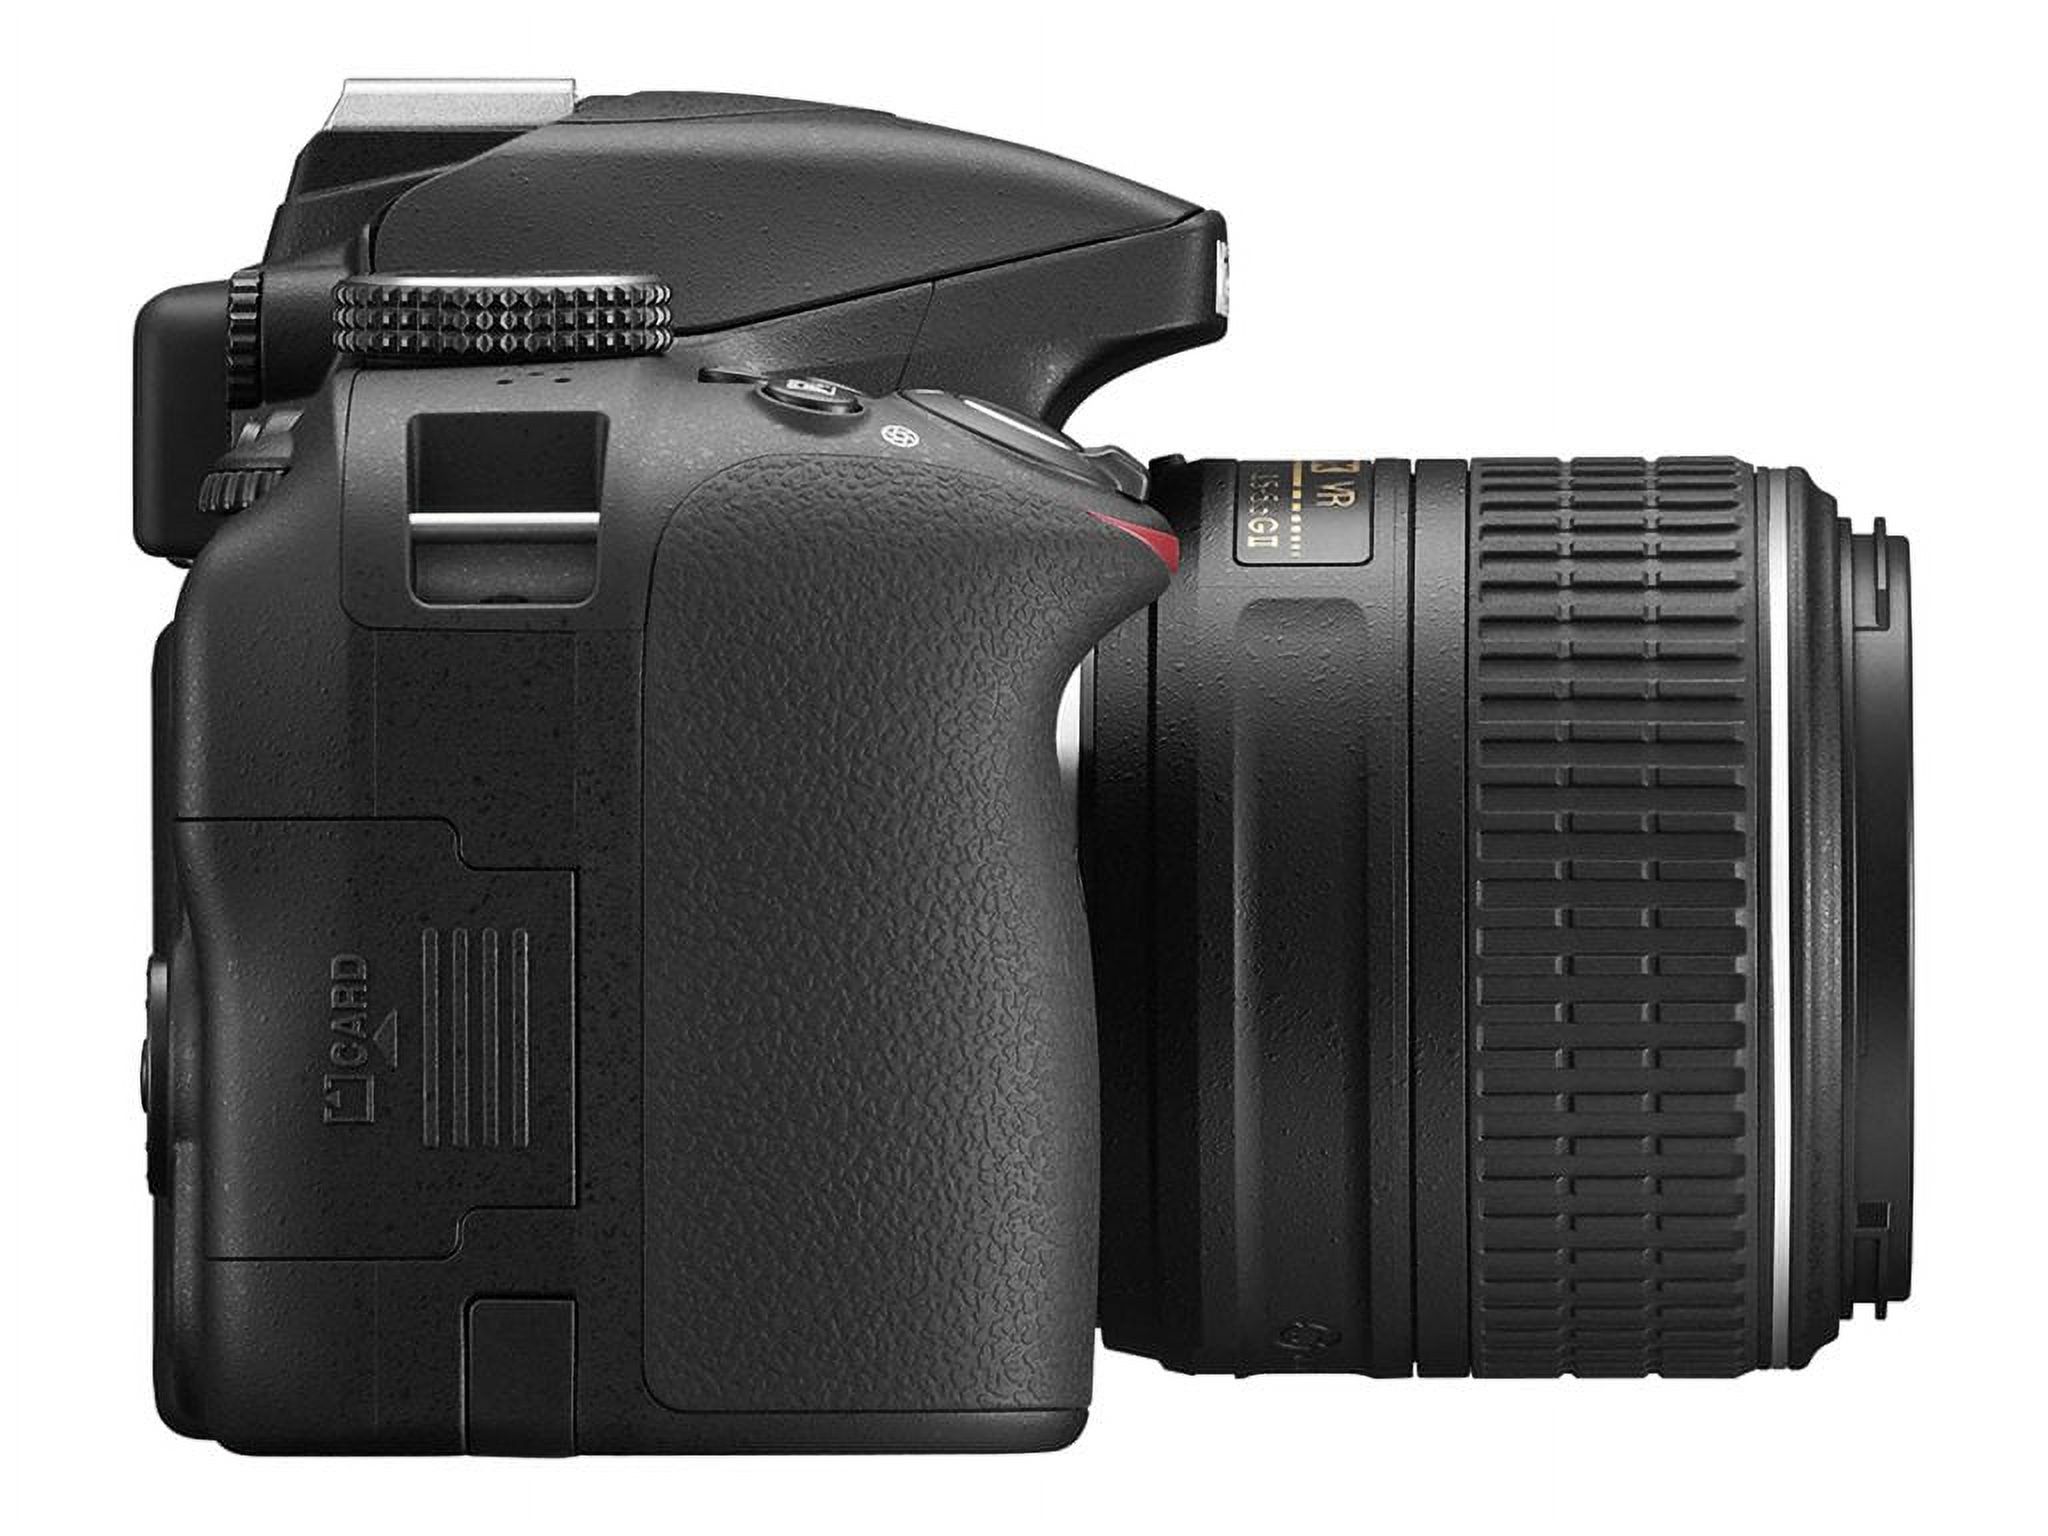 Nikon D3300 - Digital camera - SLR - 24.2 MP - APS-C - 3x optical zoom AF-S DX 18-55mm and 55-200mm VR II lenses - black - image 3 of 60